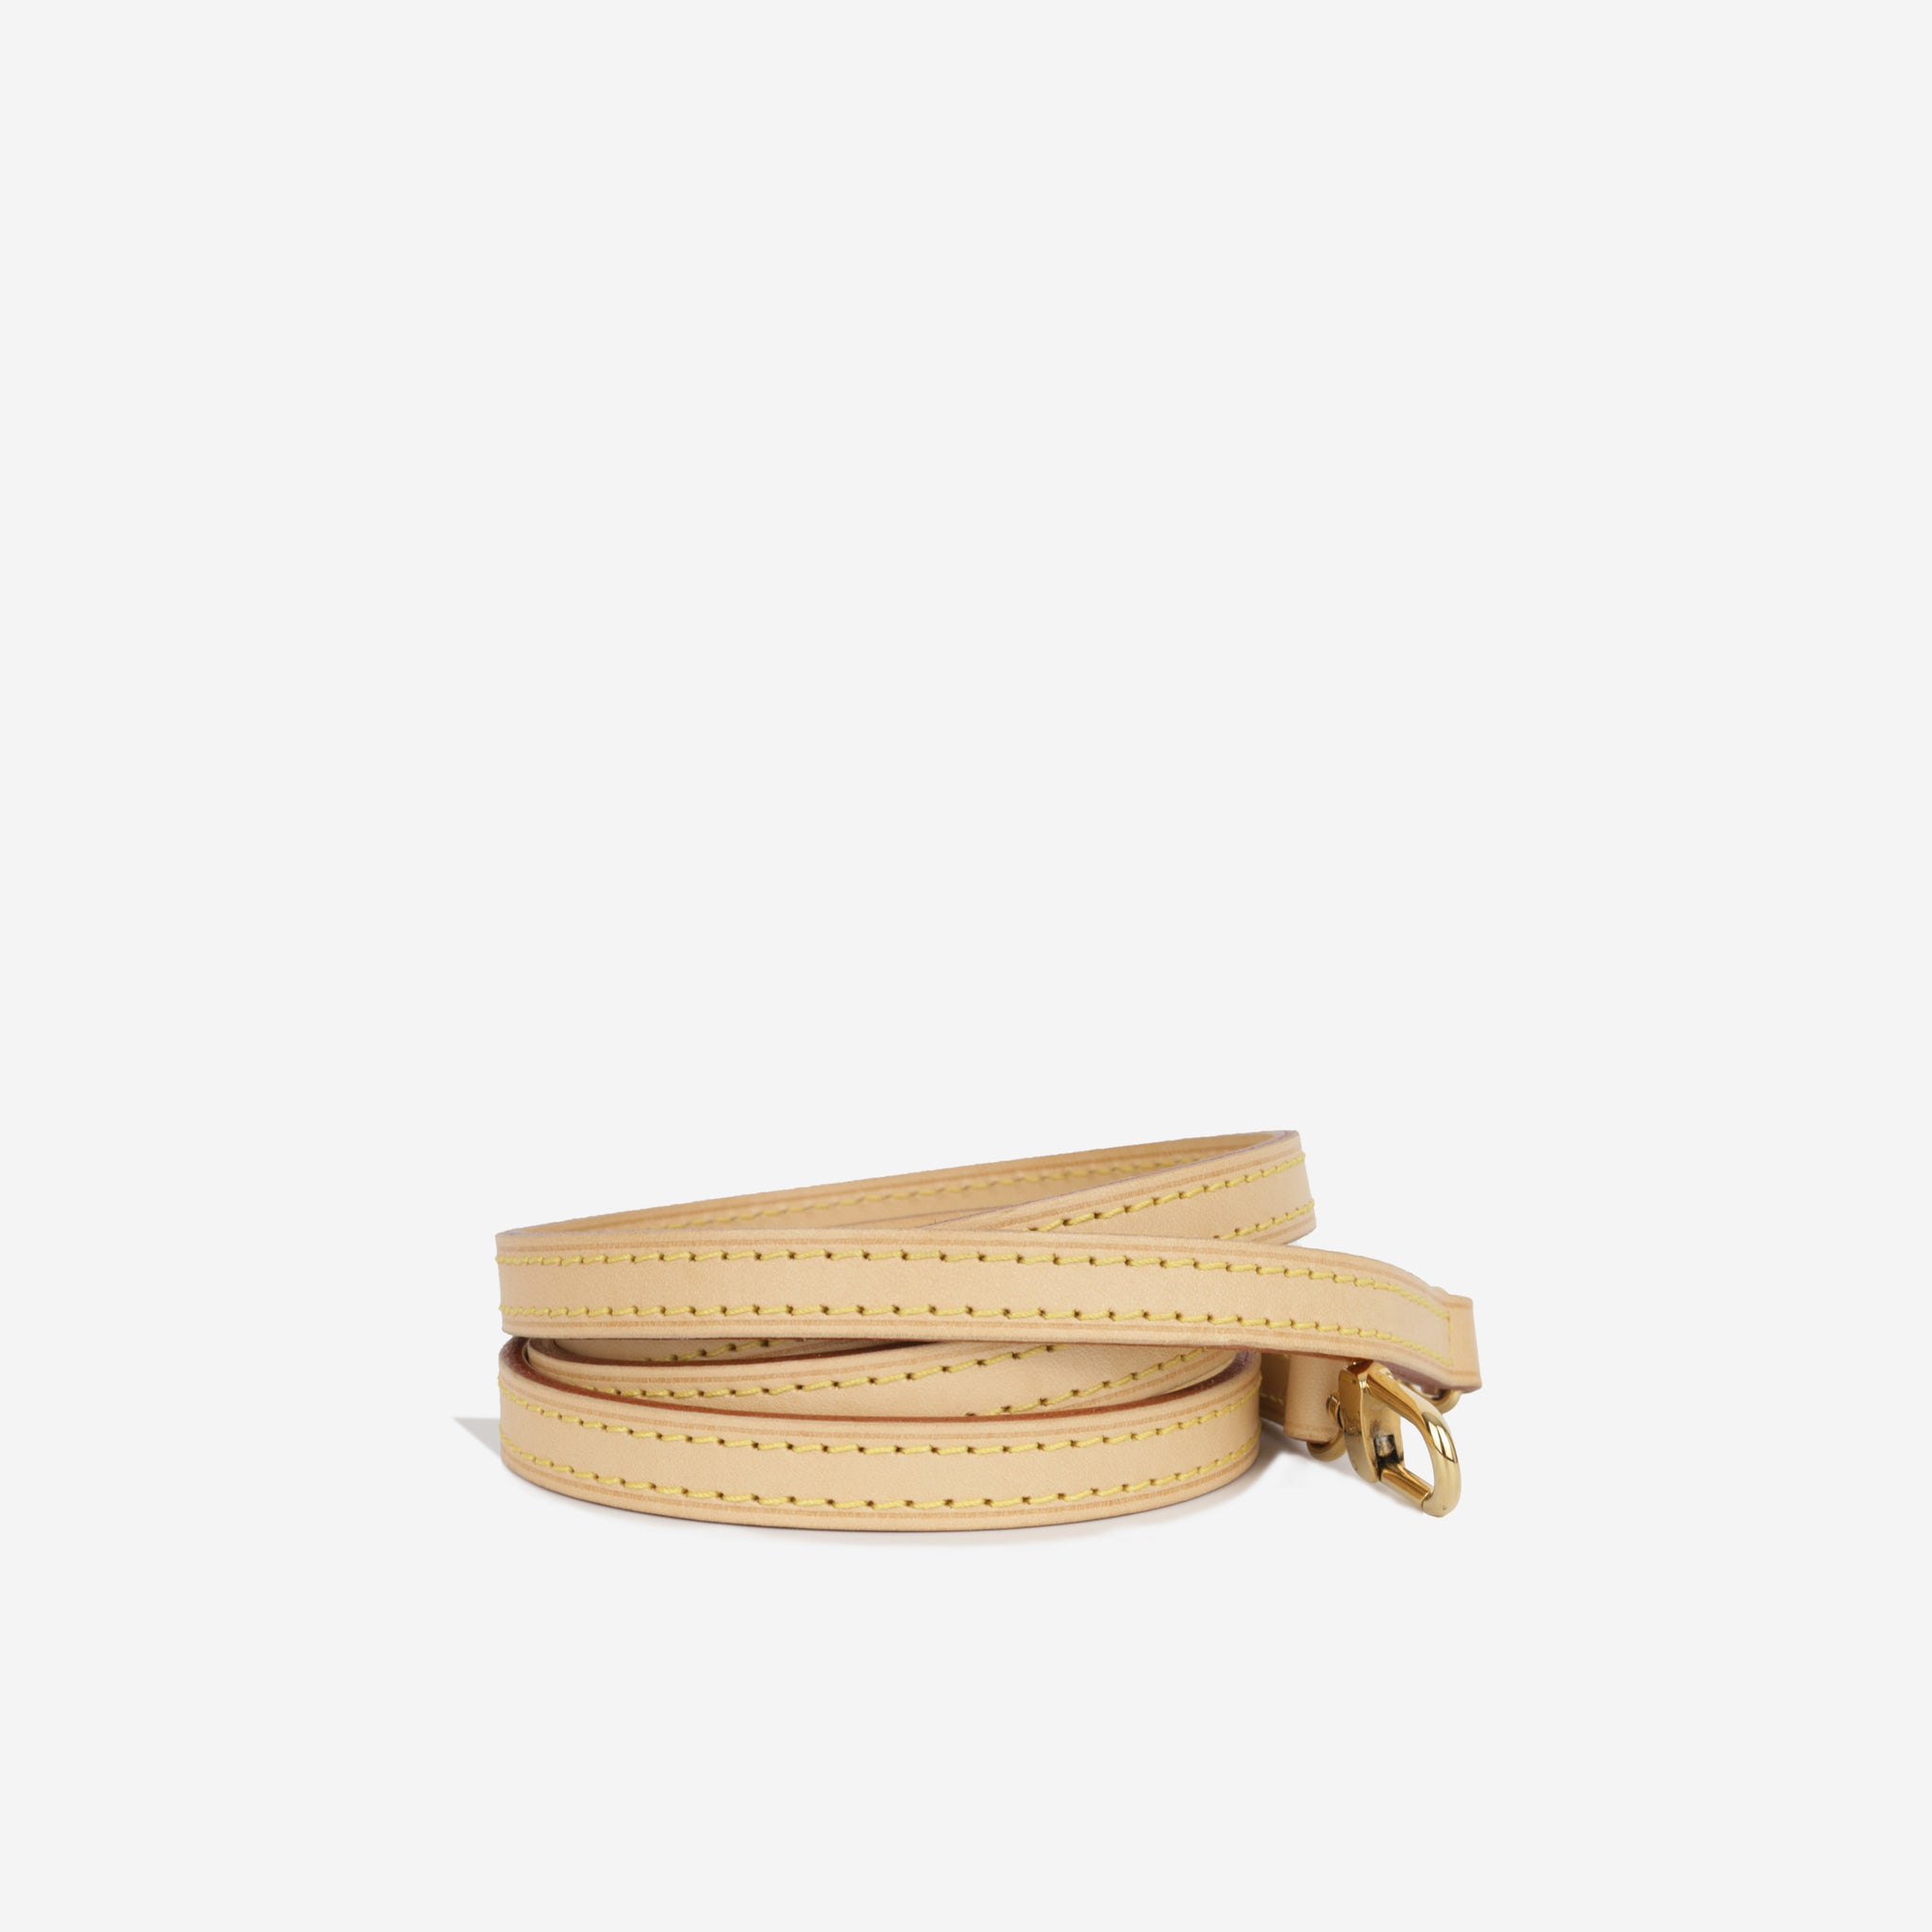 Louis Vuitton - Eva clutch strap - Beige - Vachetta Leather - GHW